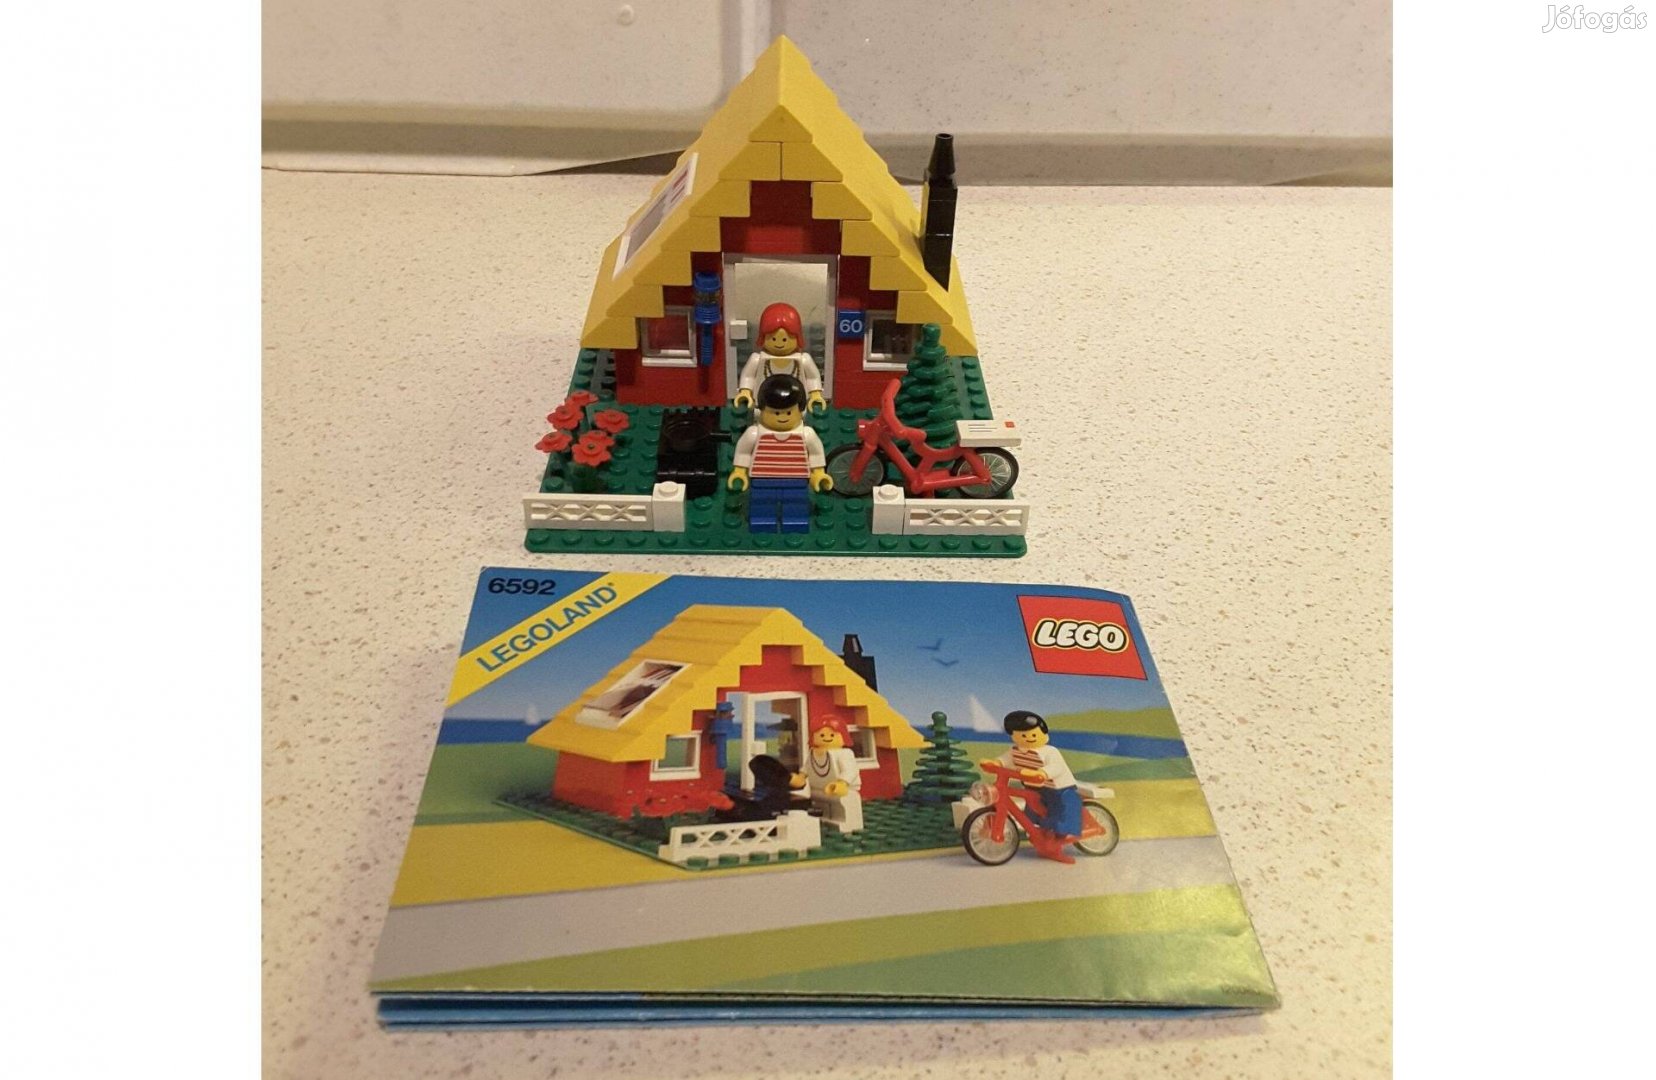 Lego 6592 Kisméretű víkend ház / Vacation hideaway + leírás